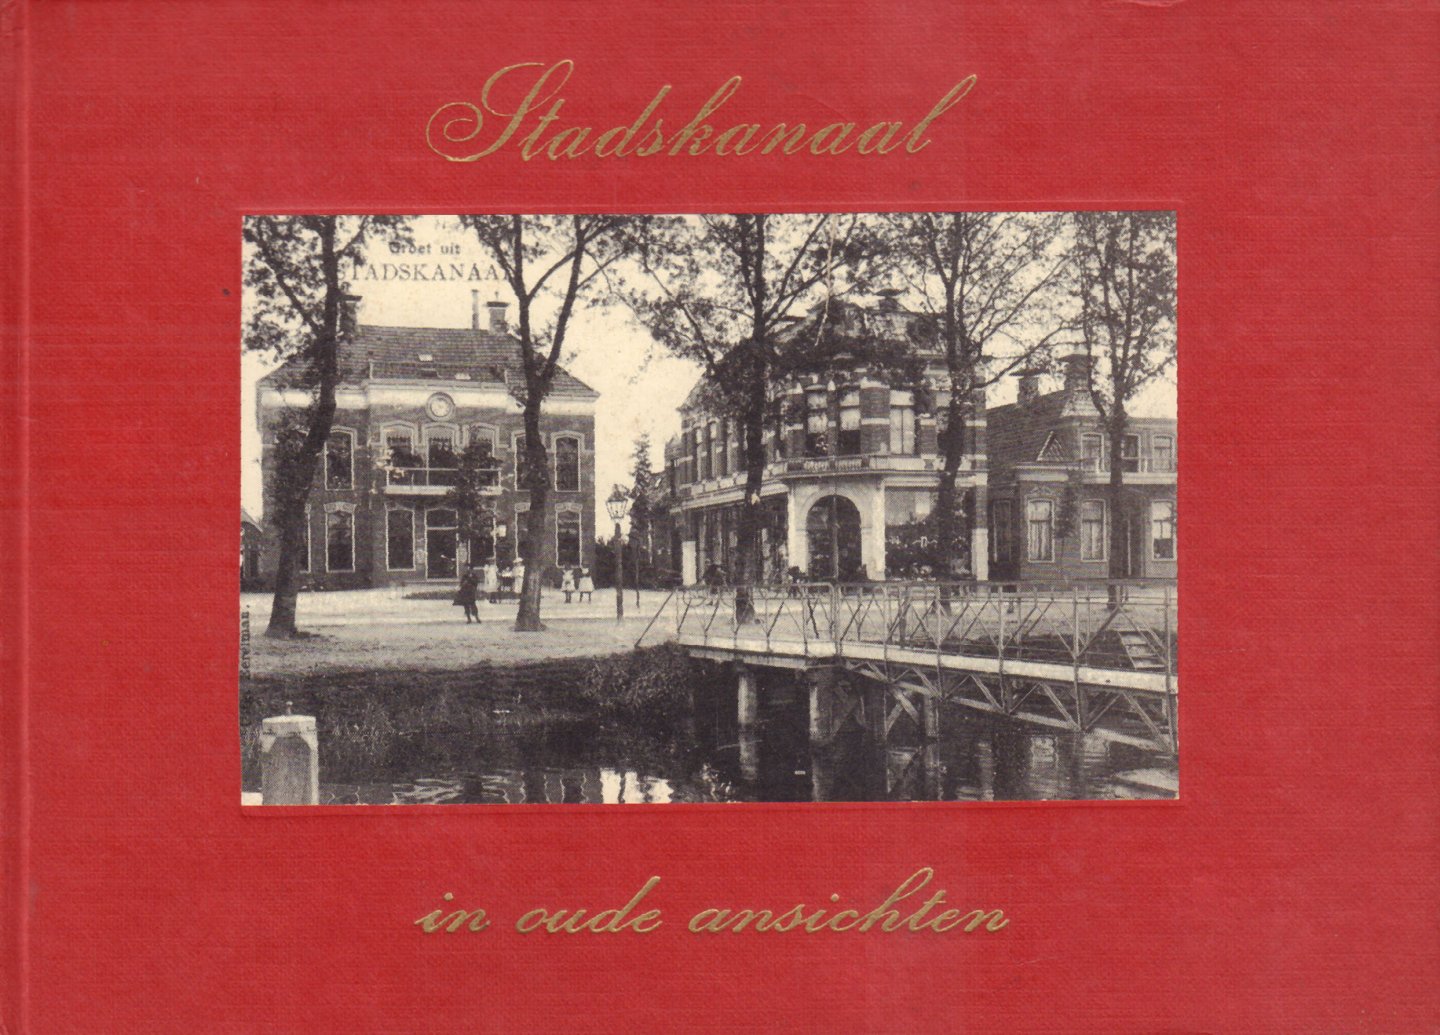 Ploeg, W.H. van der - Stadskanaal in Oude Ansichten, 80 pag. kleine hardcover, goede staat